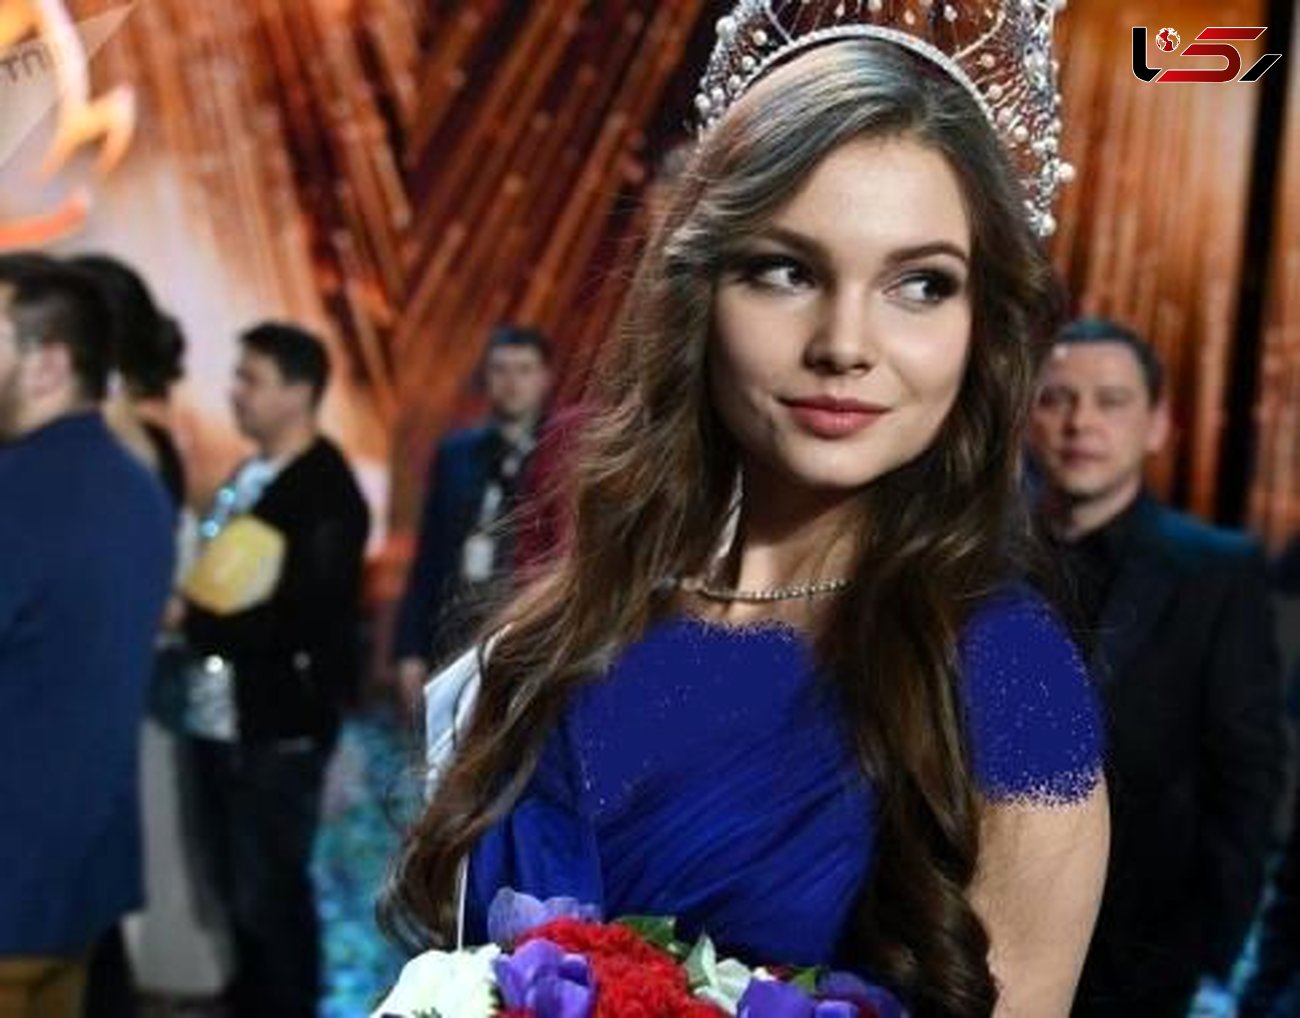 زیباترین دختر روس در 2018 جنجالی شد! + عکس